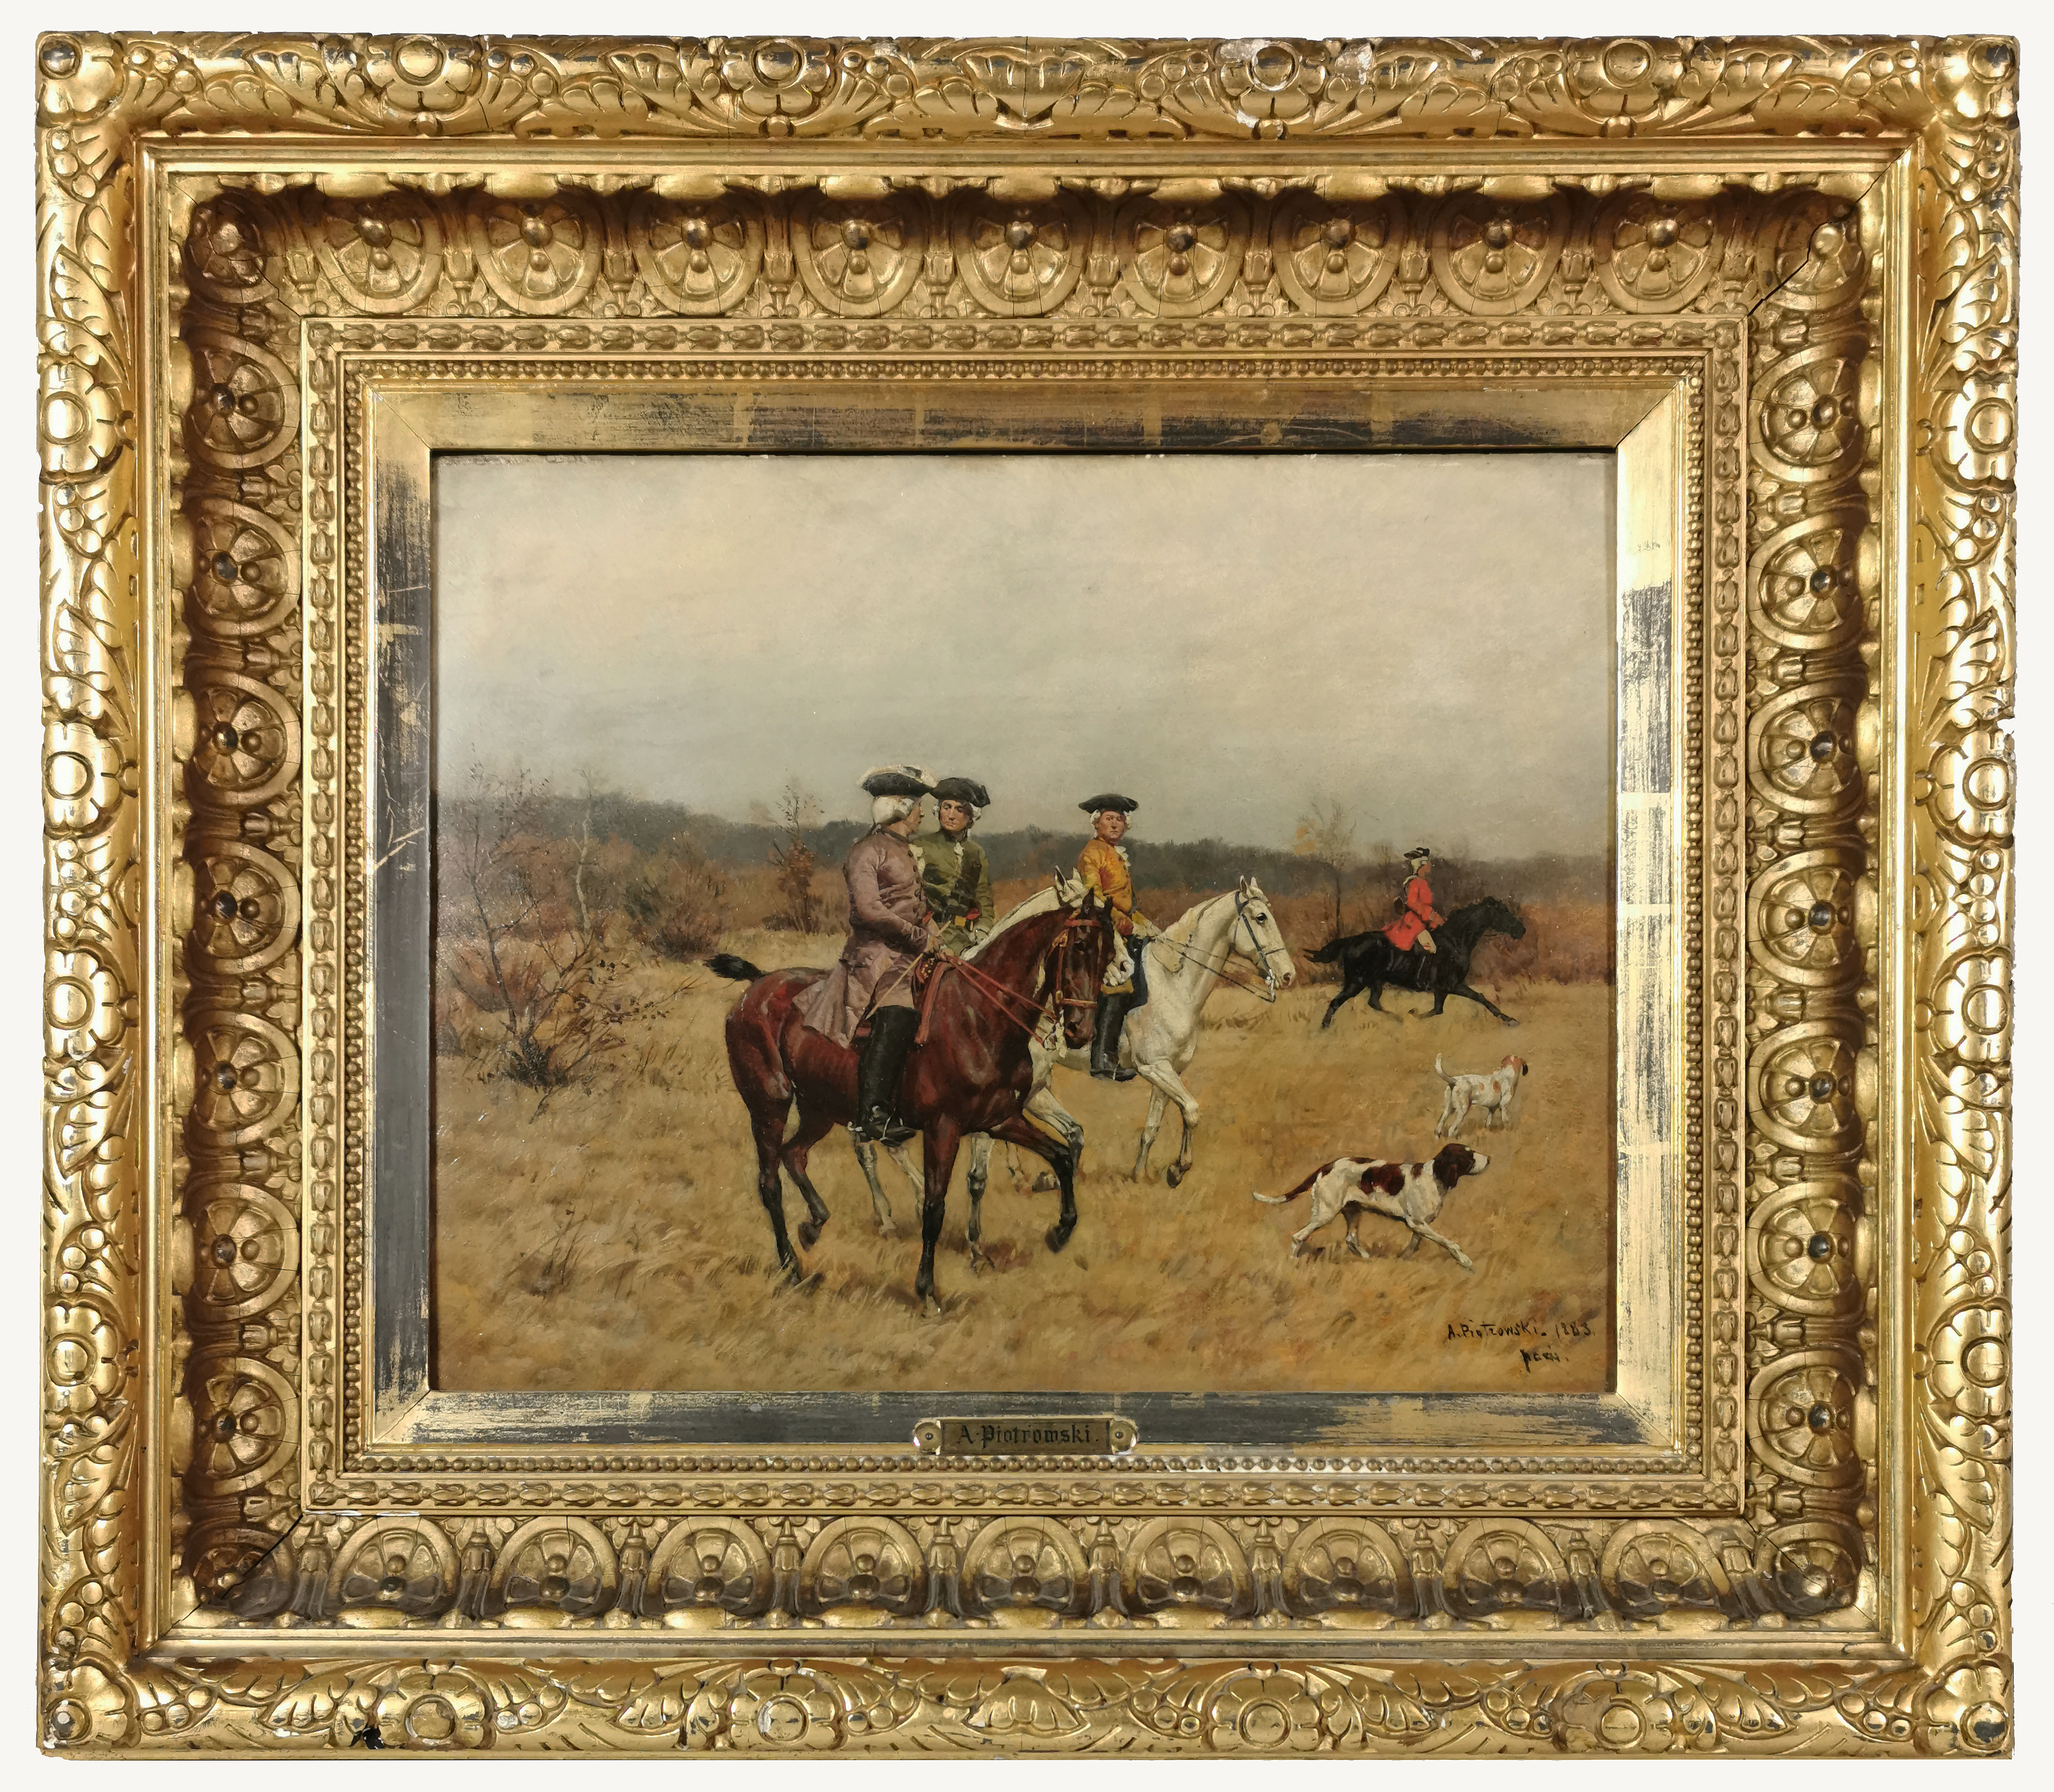 Wyjazd na polowanie, 1883